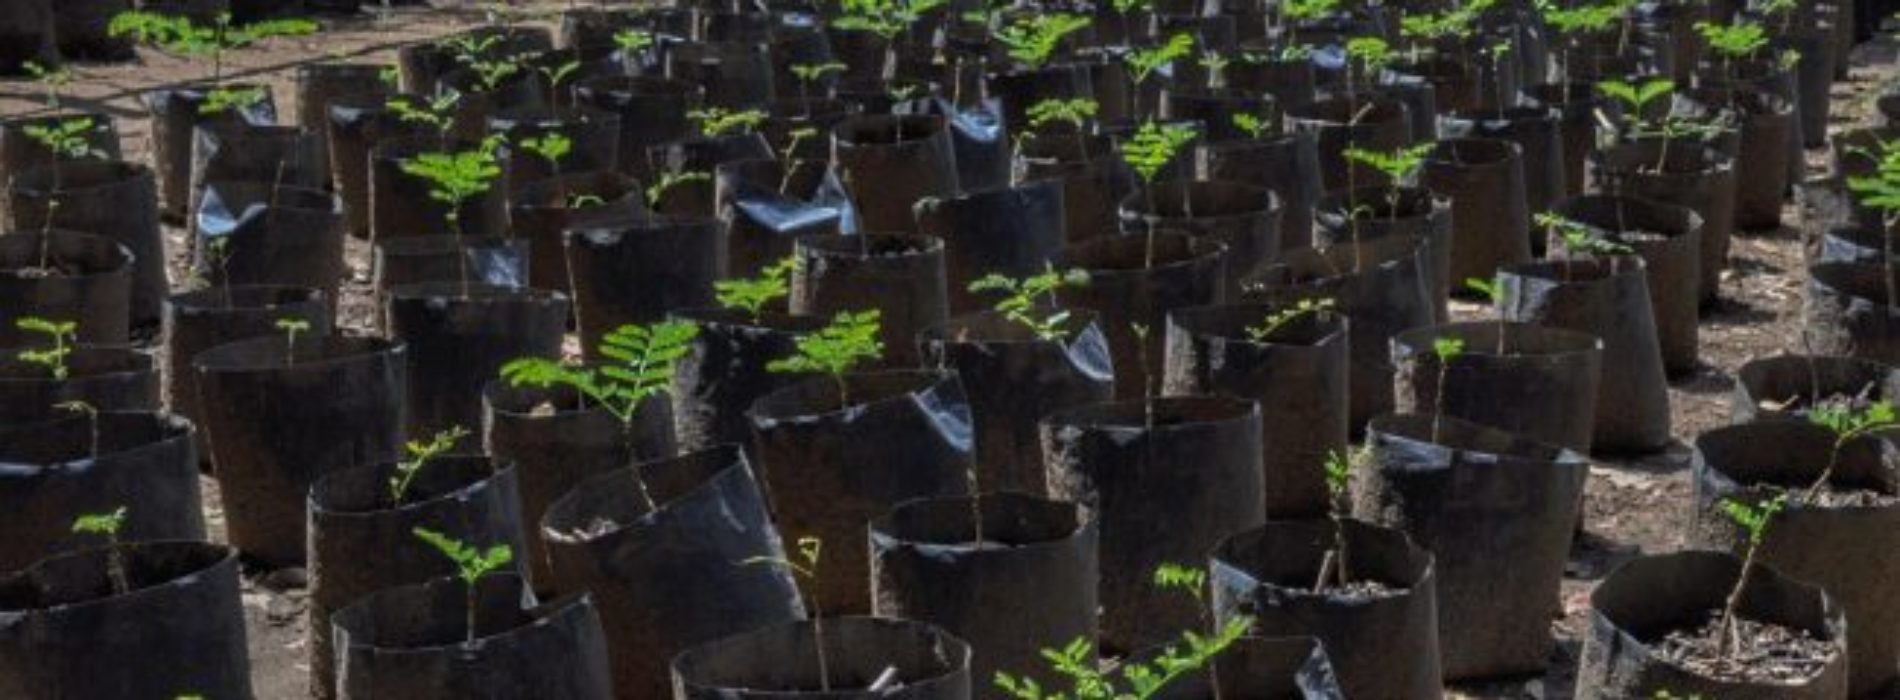 Árboles producidos en vivero del Bosque “El Tequio”
coadyuvan a reforestación de 11 municipios